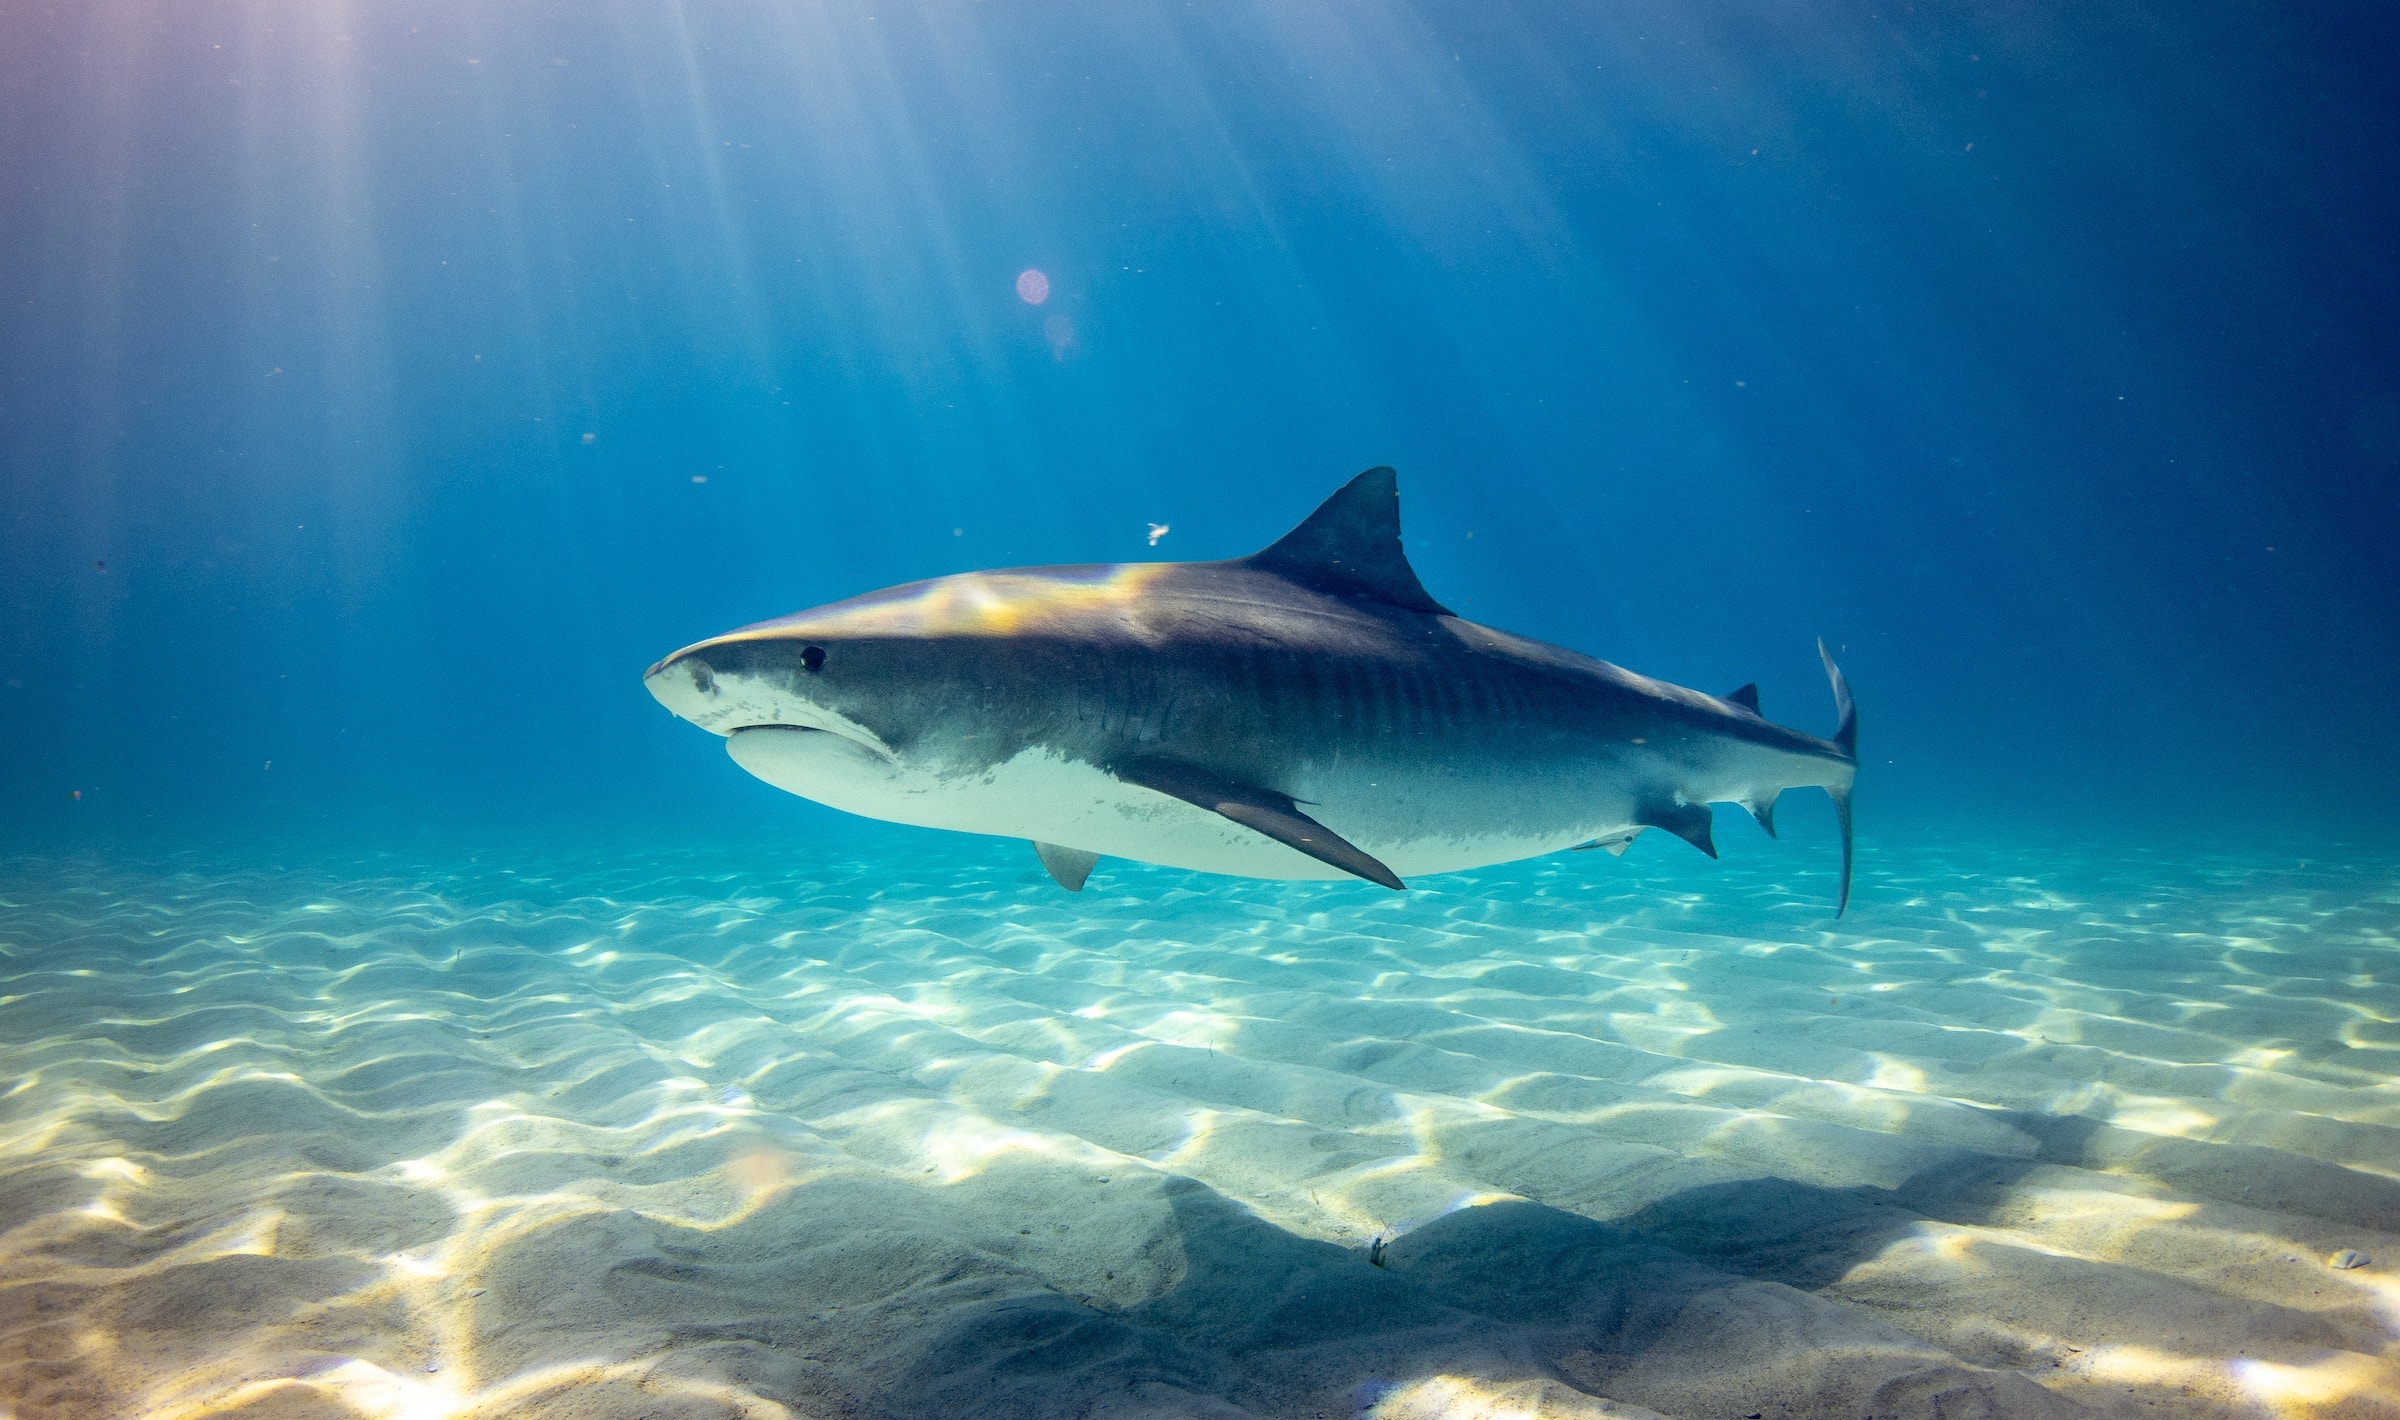 Des requins accros à la cocaïne jetée au large de la Floride ?